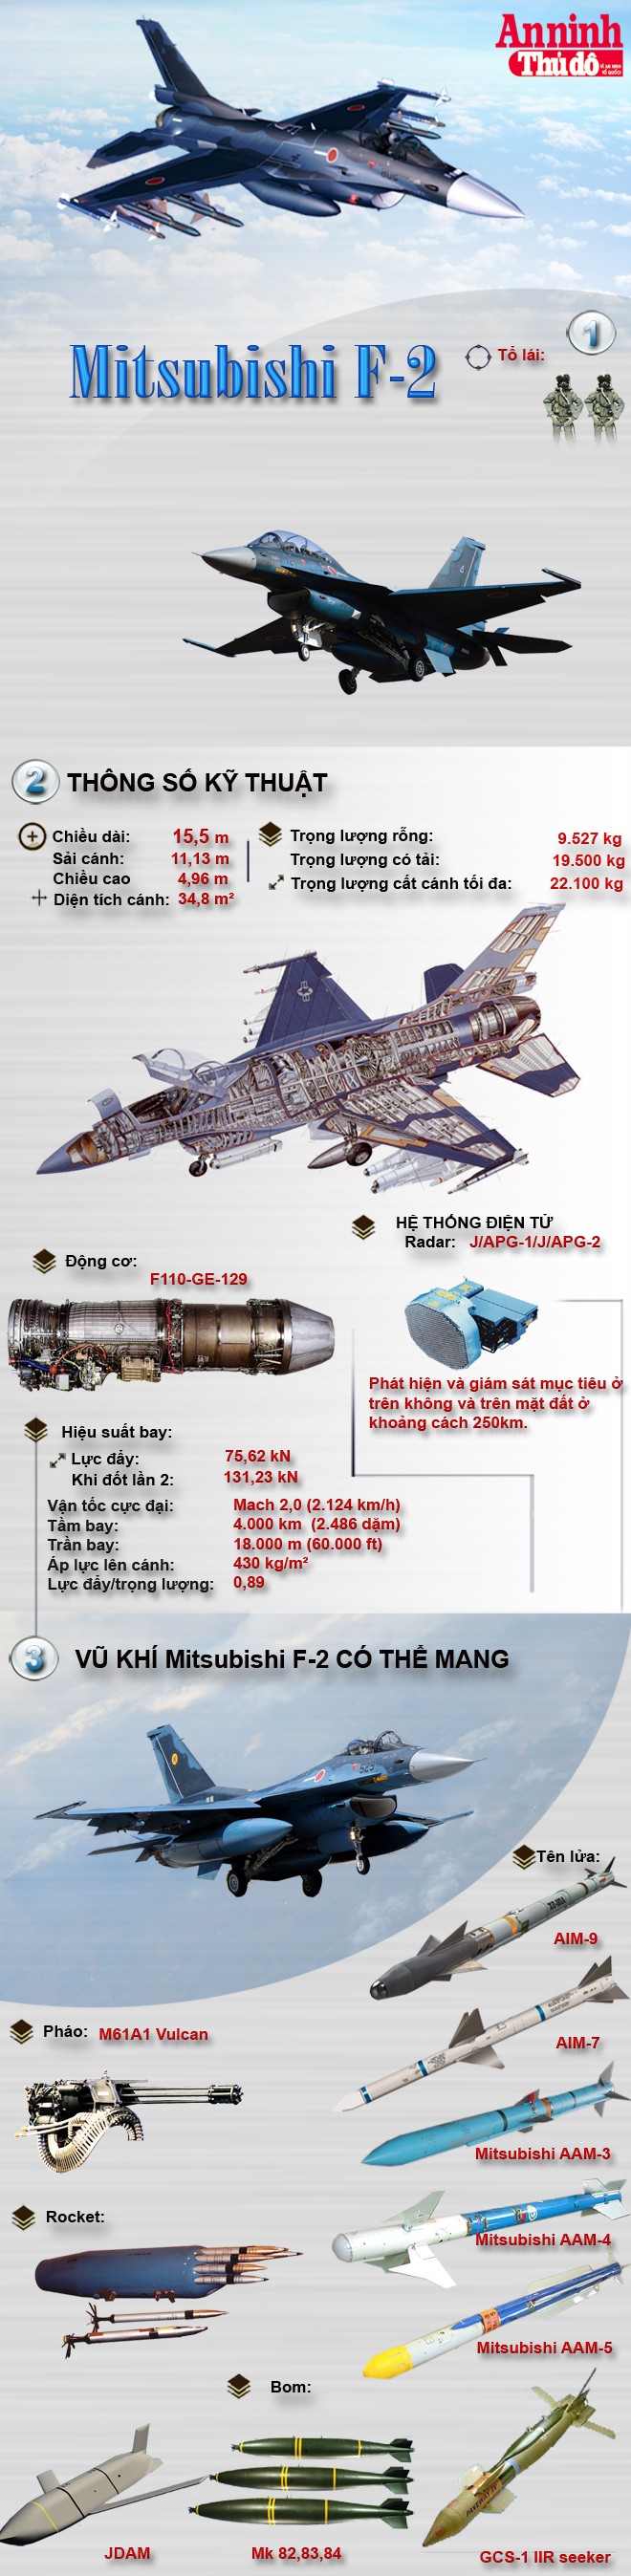 [Infographic] Mitsubishi F-2 – Tinh hoa của công nghiệp quốc phòng Nhật Bản ảnh 1